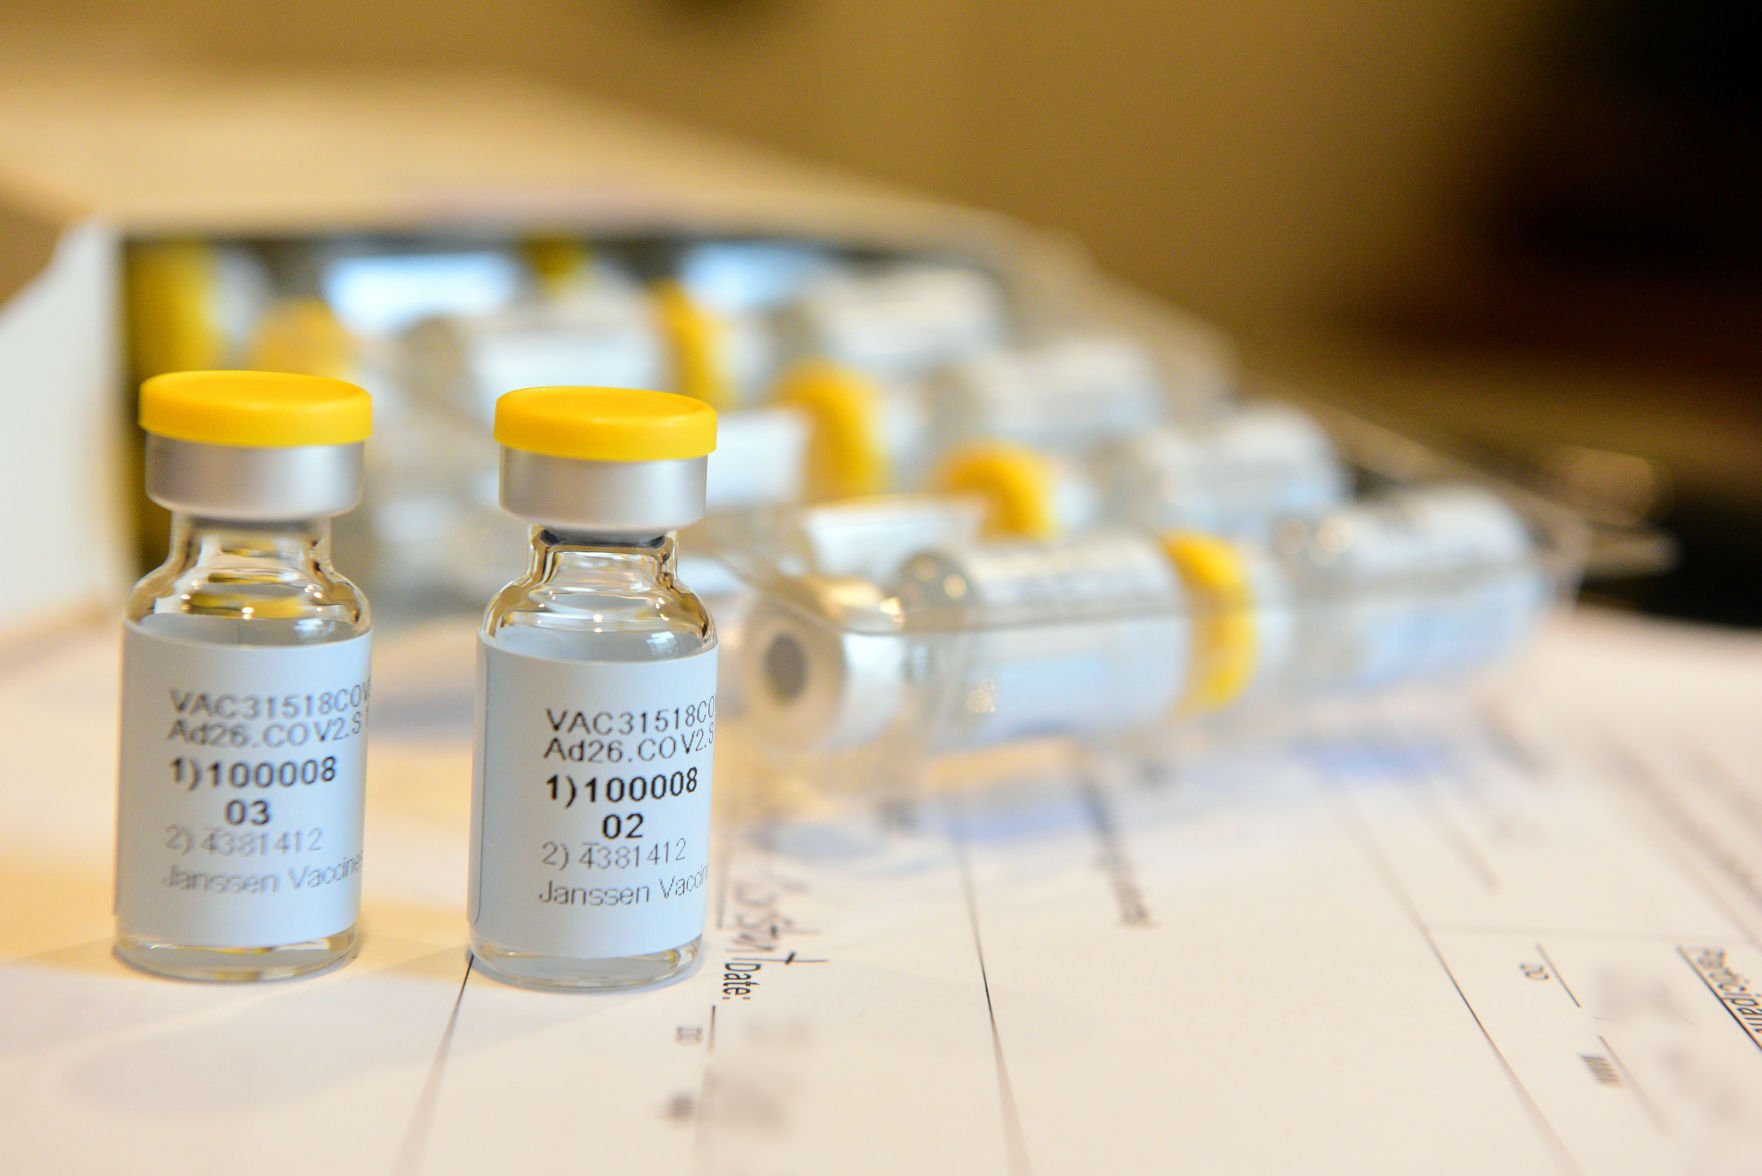 northwest activity center covid vaccine schedule